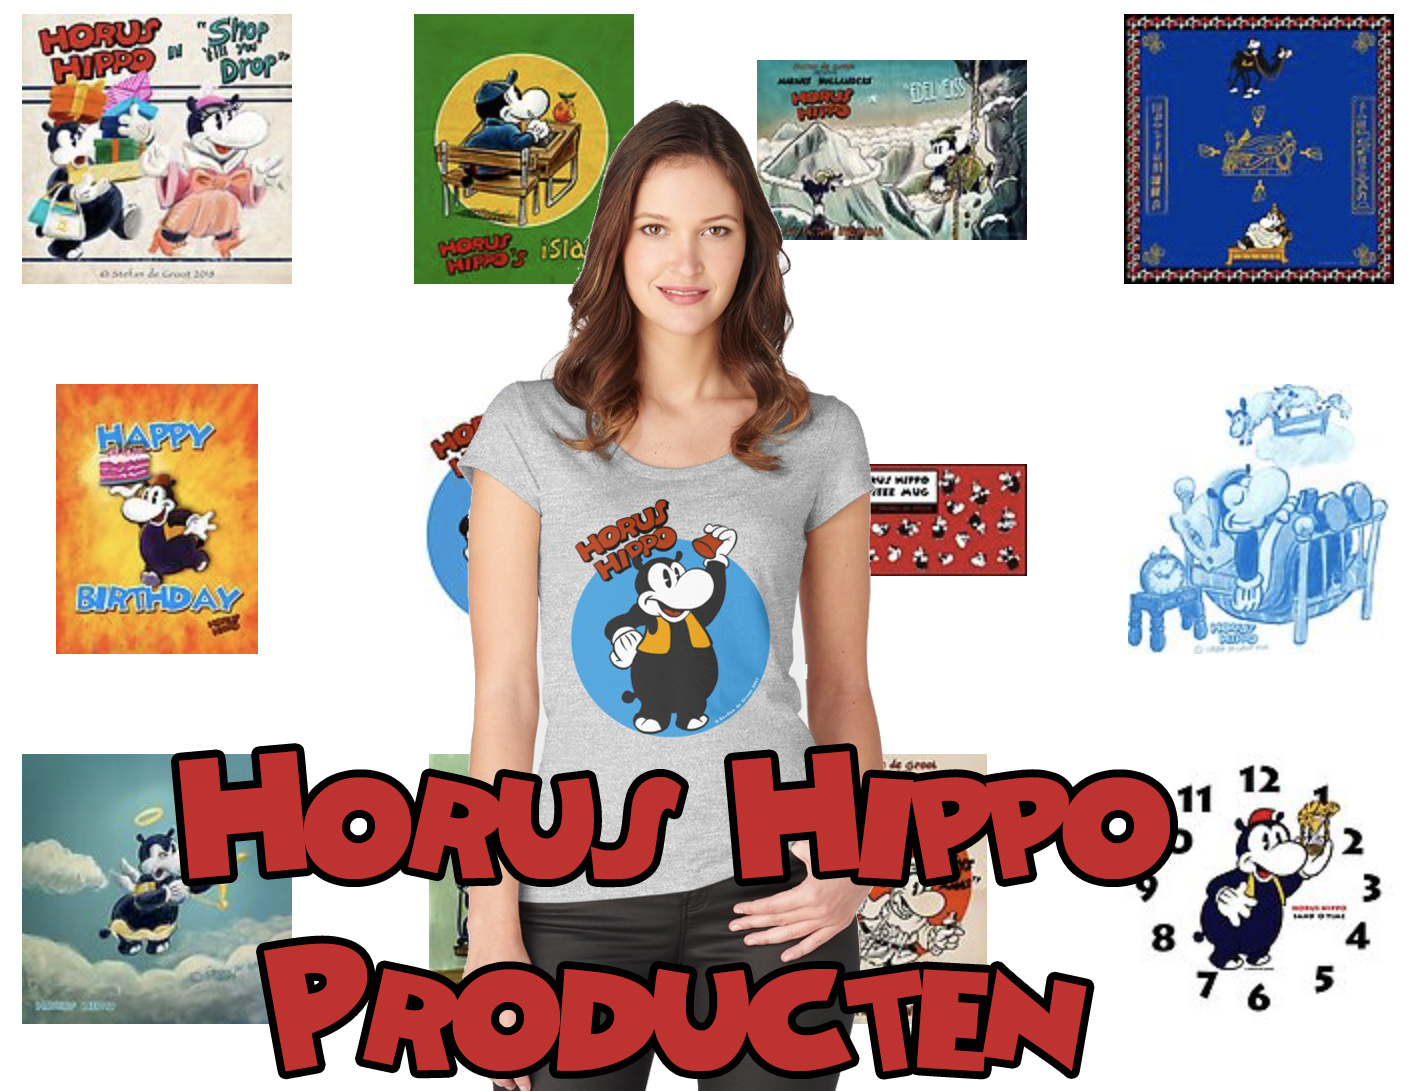 Horus Hippo Producten